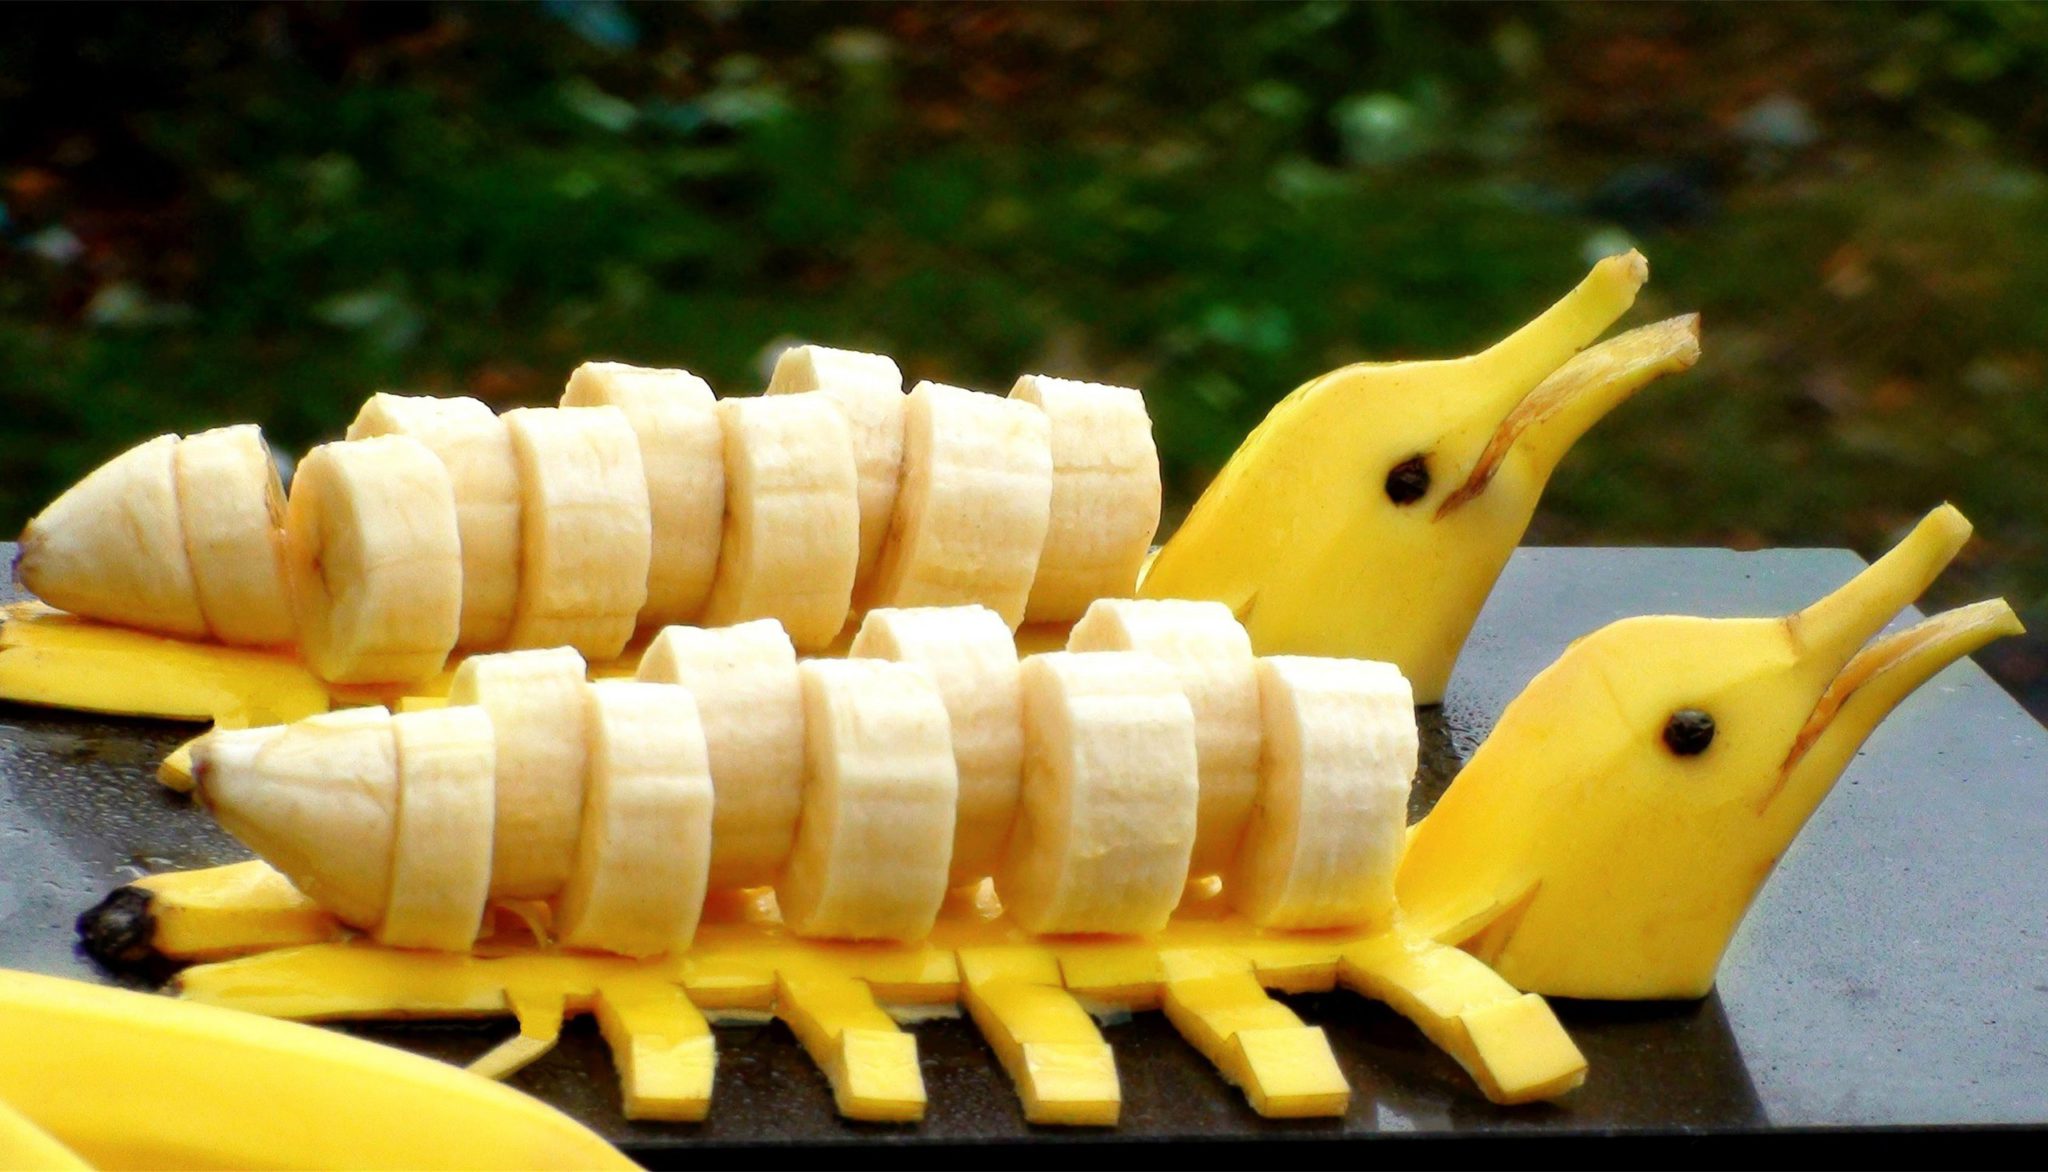 Красиво нарезать банан